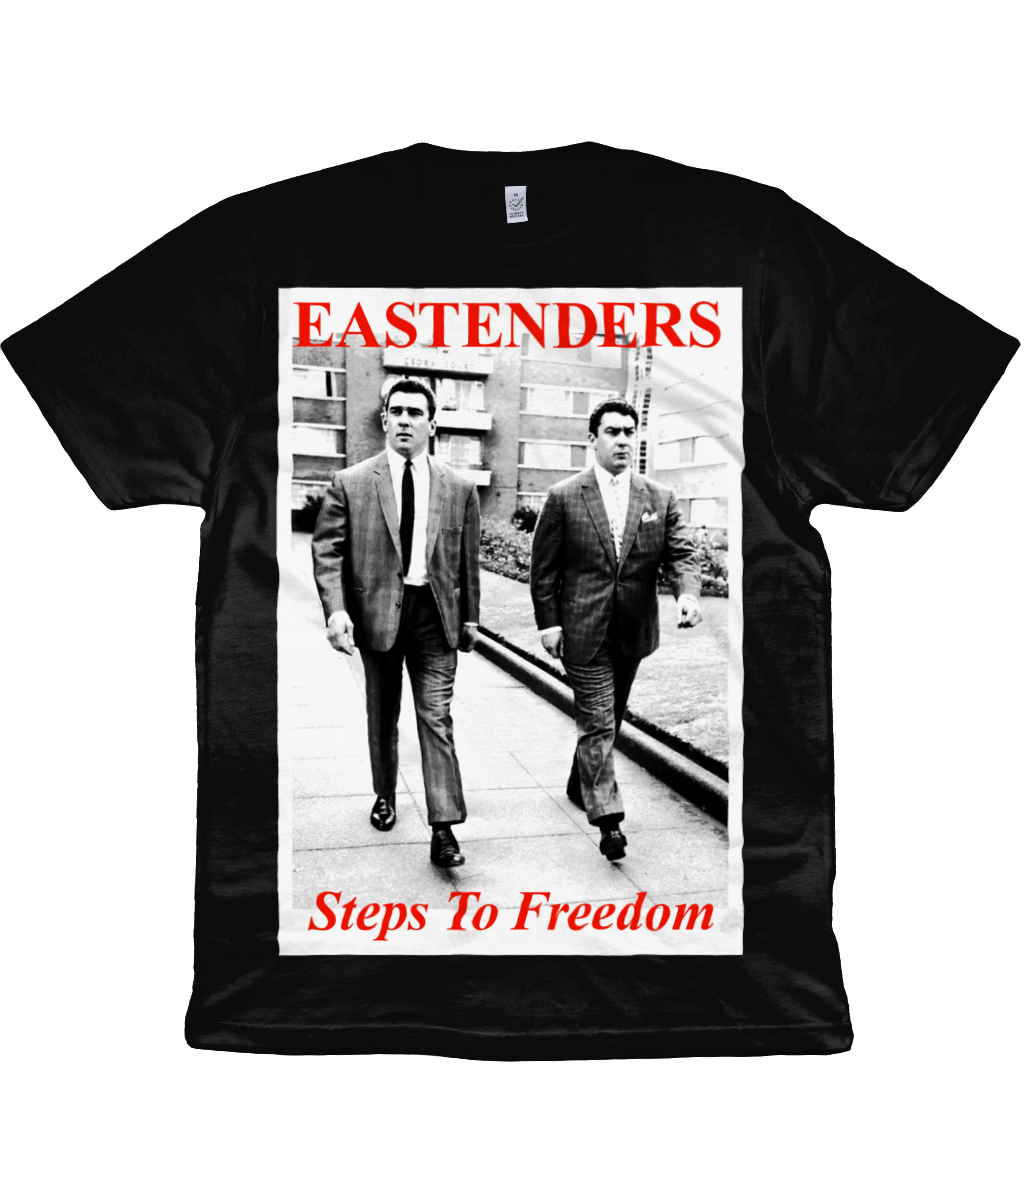 EASTENDERS - Steps To Freedom - 1990